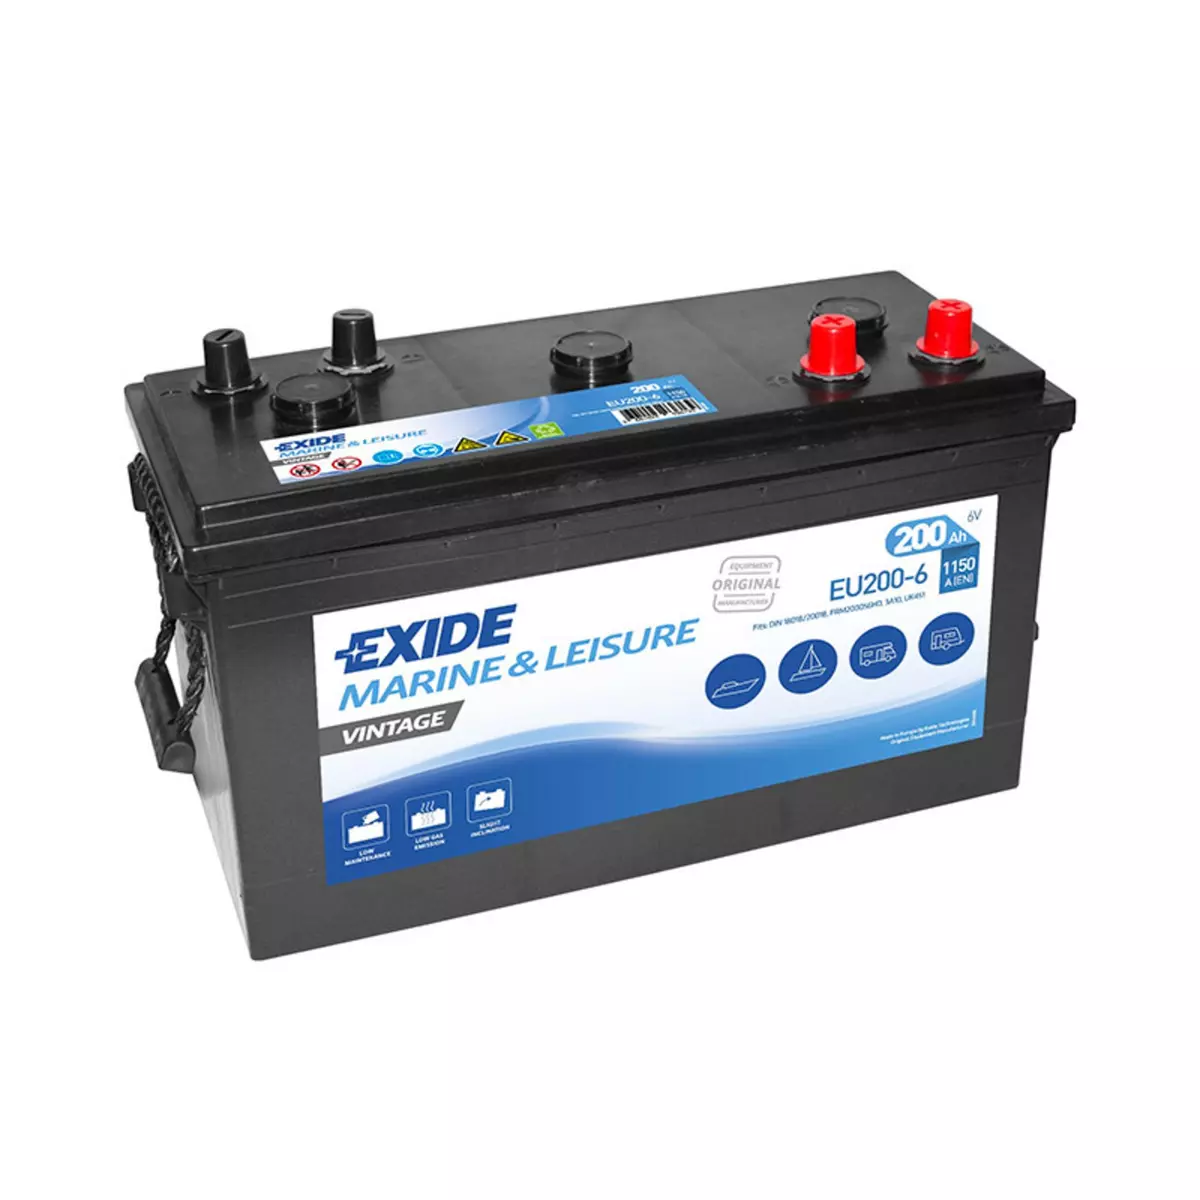 EXIDE Batterie Exide Vintage EU200-6 6V 200ah 1150A